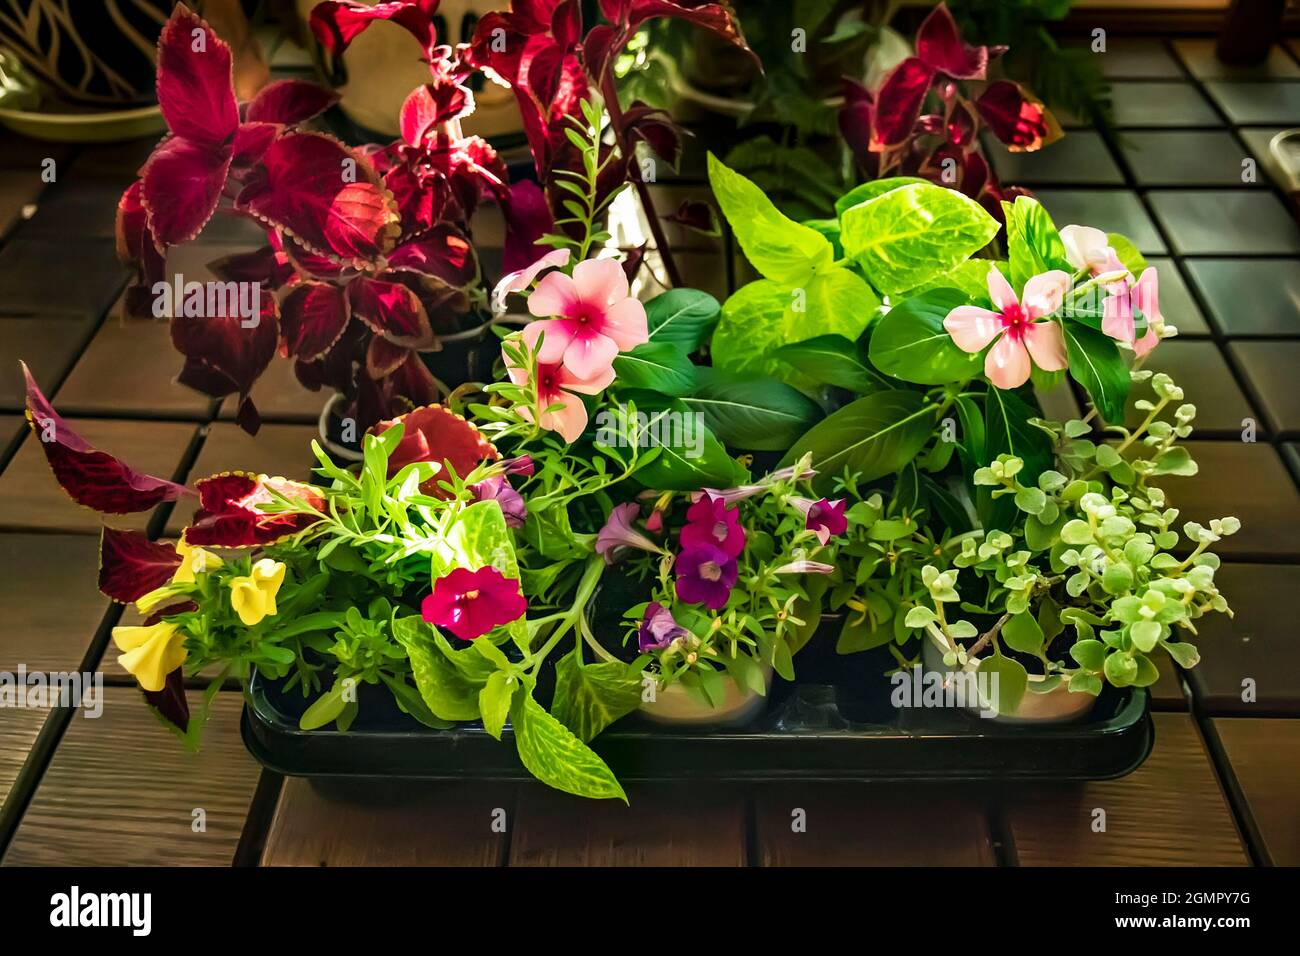 Auswahl an blühenden Blumen in einem Container zum Verkauf in einem Blumenladen. Sämlinge in temporären Töpfen. Coleus, Catharanthus, Pelargonium und Bacopa käua Stockfoto